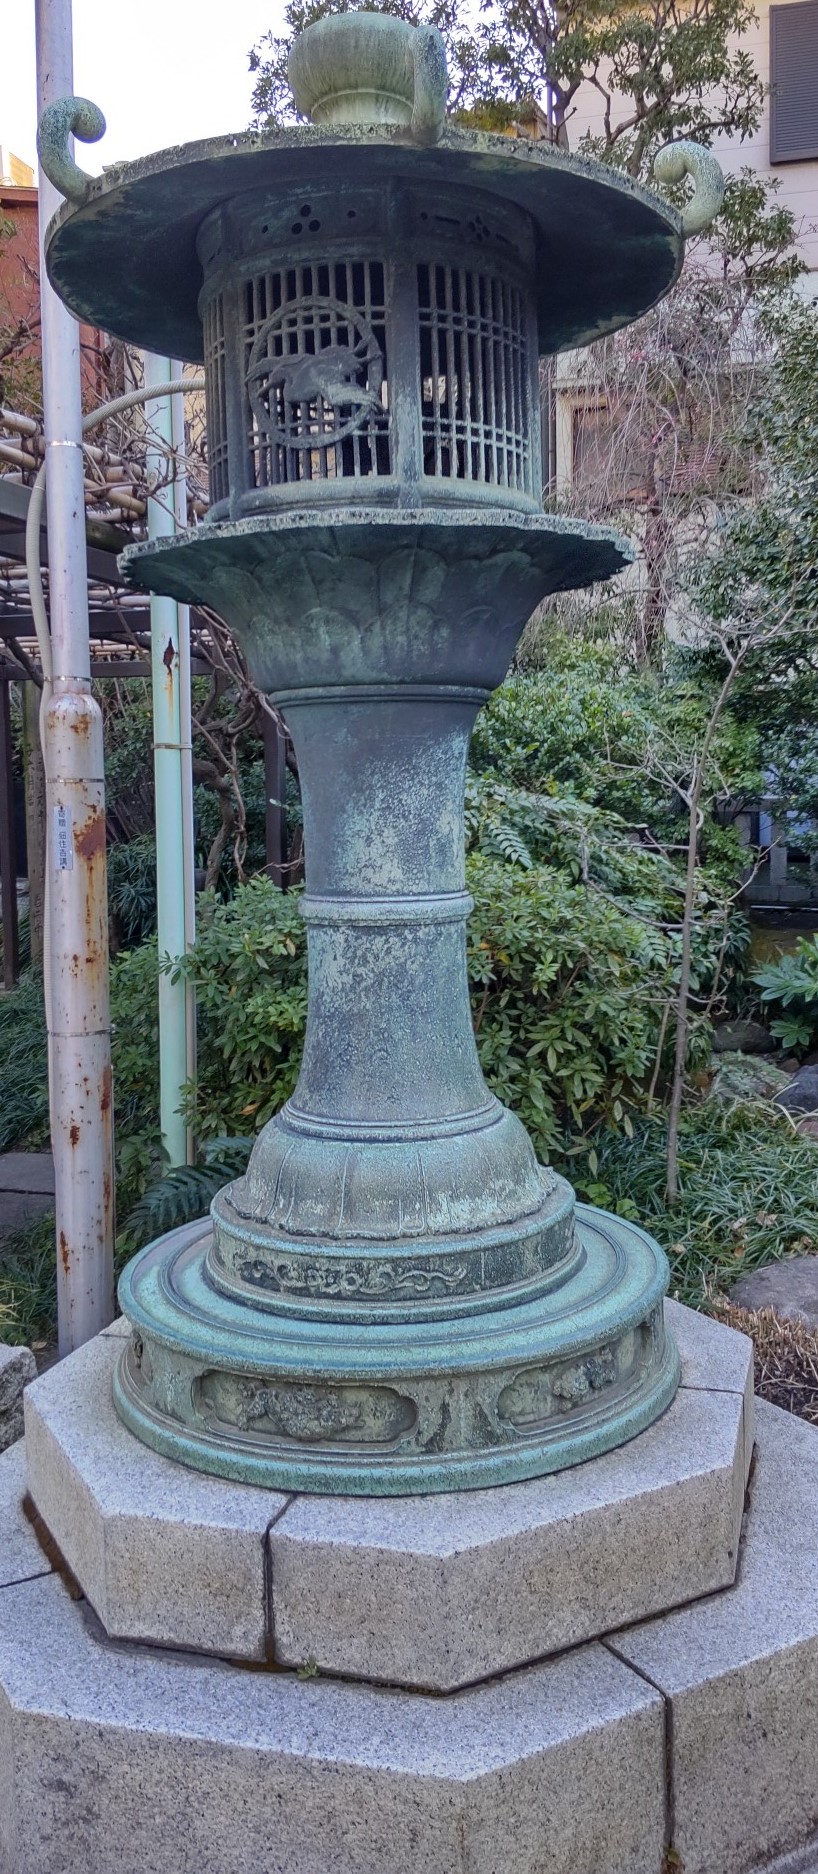  住吉神社境内の「入船稲荷神社」と銅製灯籠